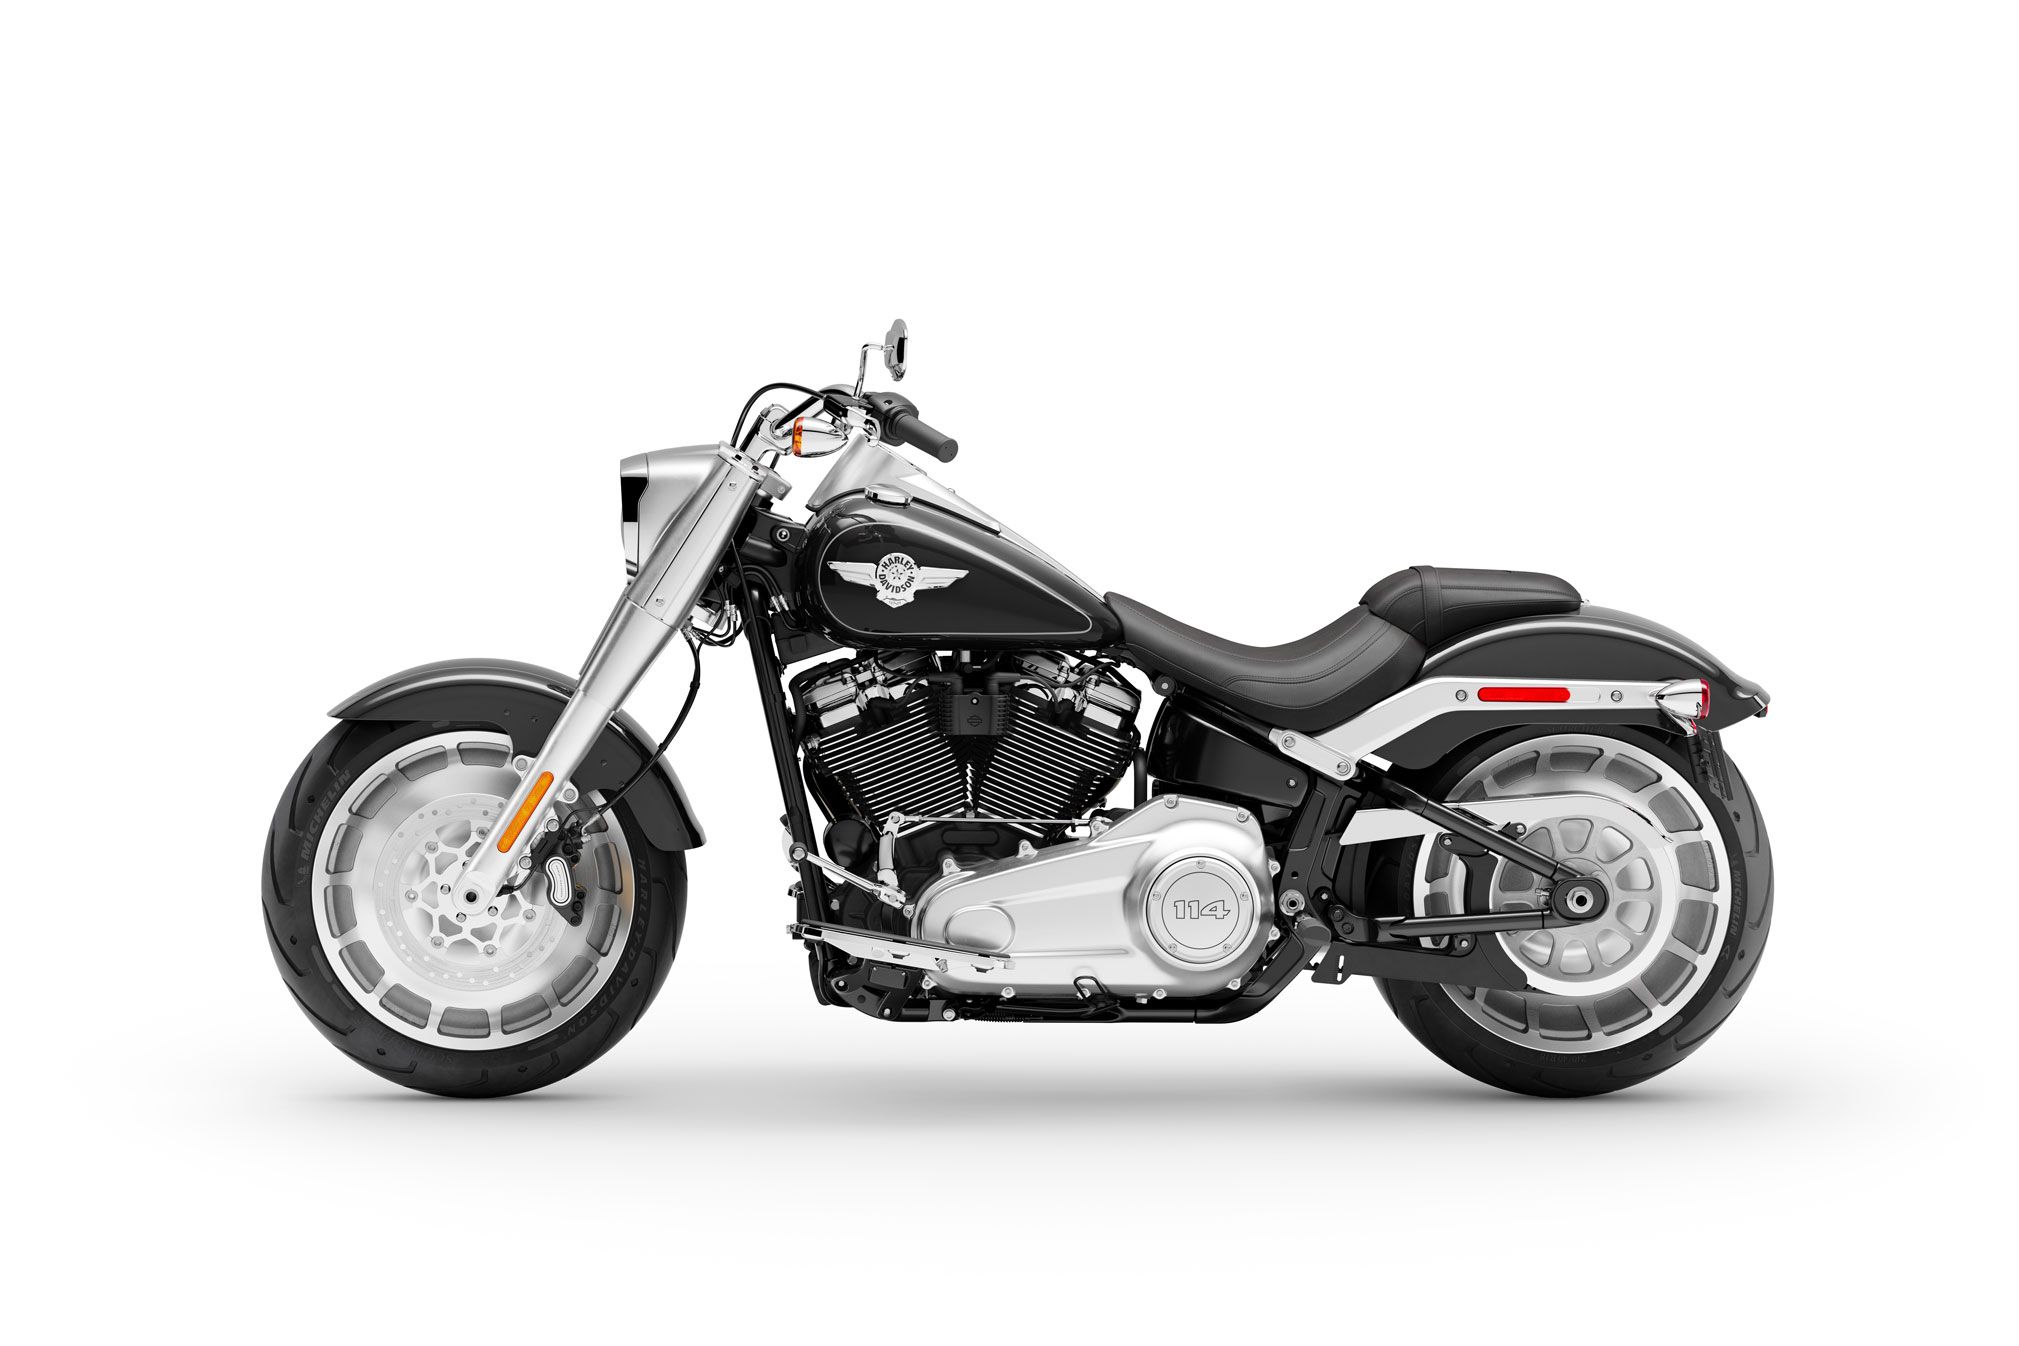 Harley Davidson Fat Boy 2019 Price Off 66 Medpharmres Com